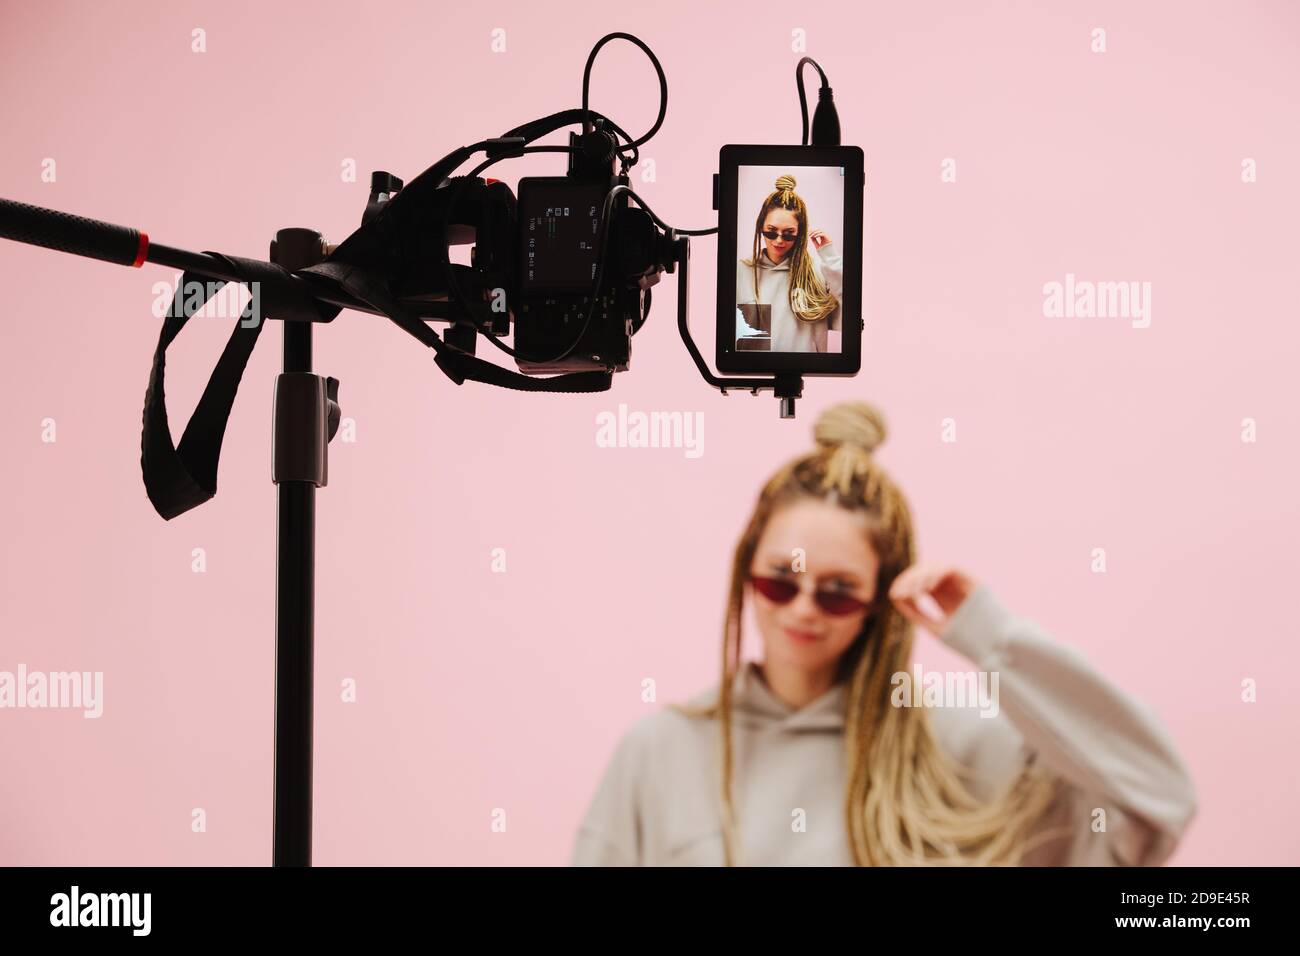 Caméra avec moniteur de terrain filmant femme élégante avec blonde afro tresses sur rose Banque D'Images